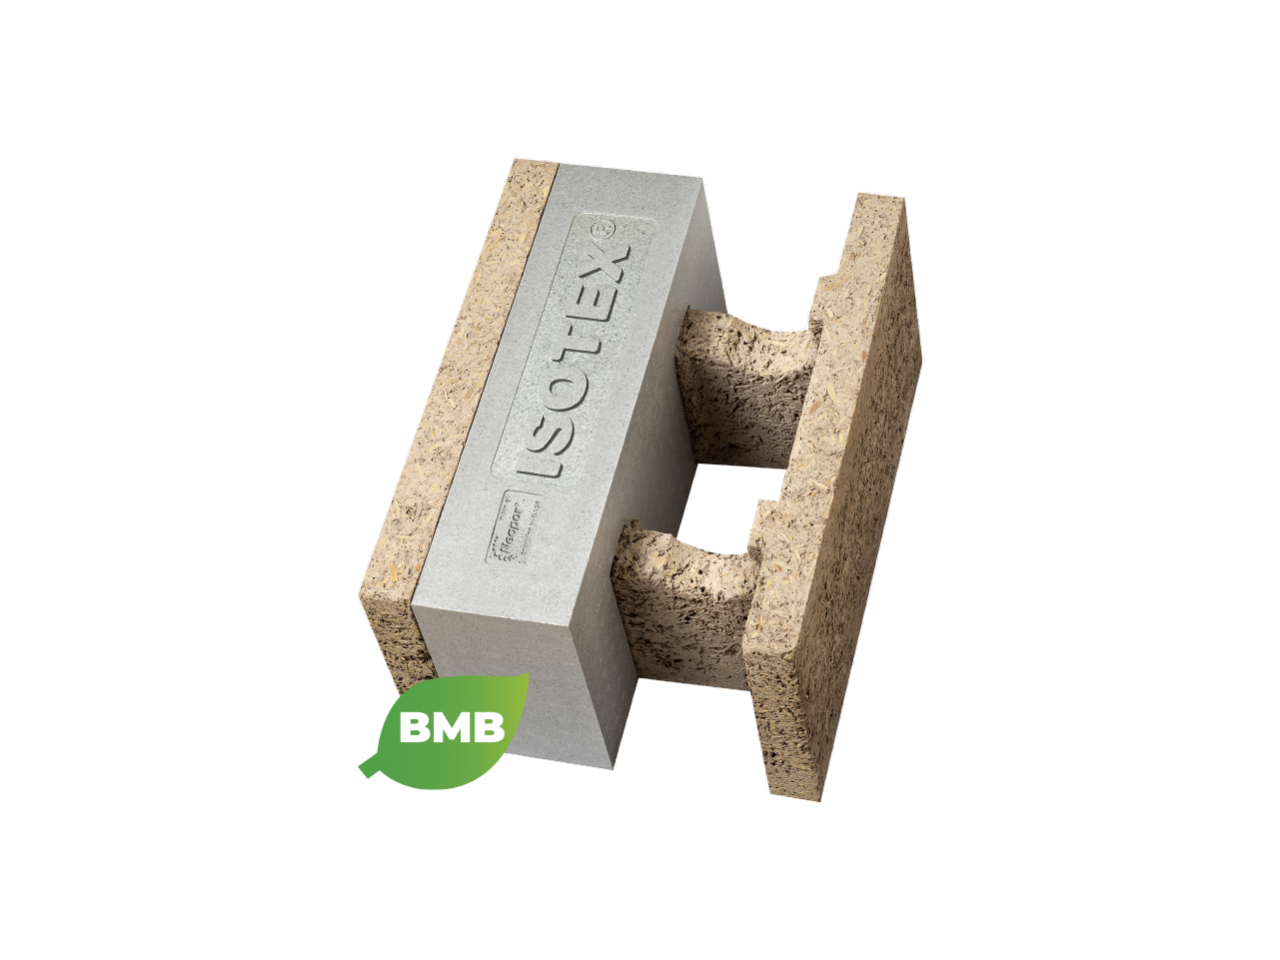 Blocchi cassero in legno cemento Isotex – HDIII 44/20 con Neopor BMBcert di BASF - Con il Blocco cassero ISOTEX in legno cemento HDIII 44/20, con grafite Neopor® BMBcert di BASF si realizzano pareti portanti esterne.